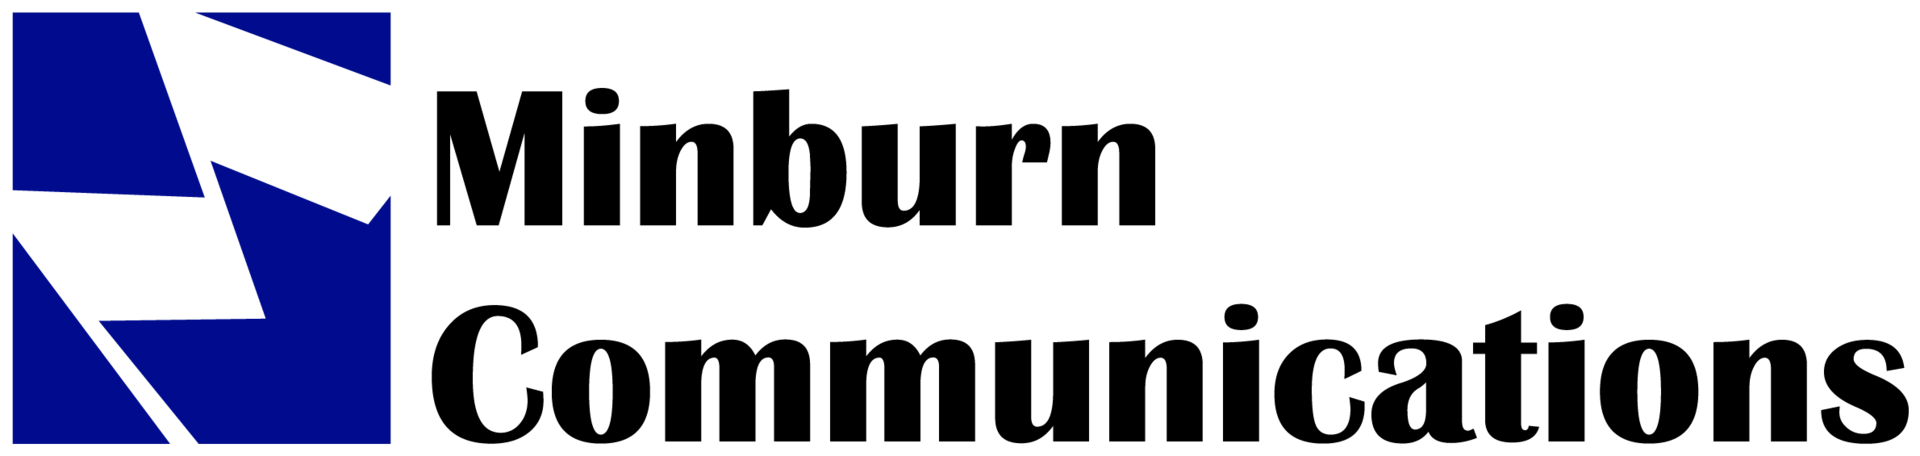 minburn communications logo